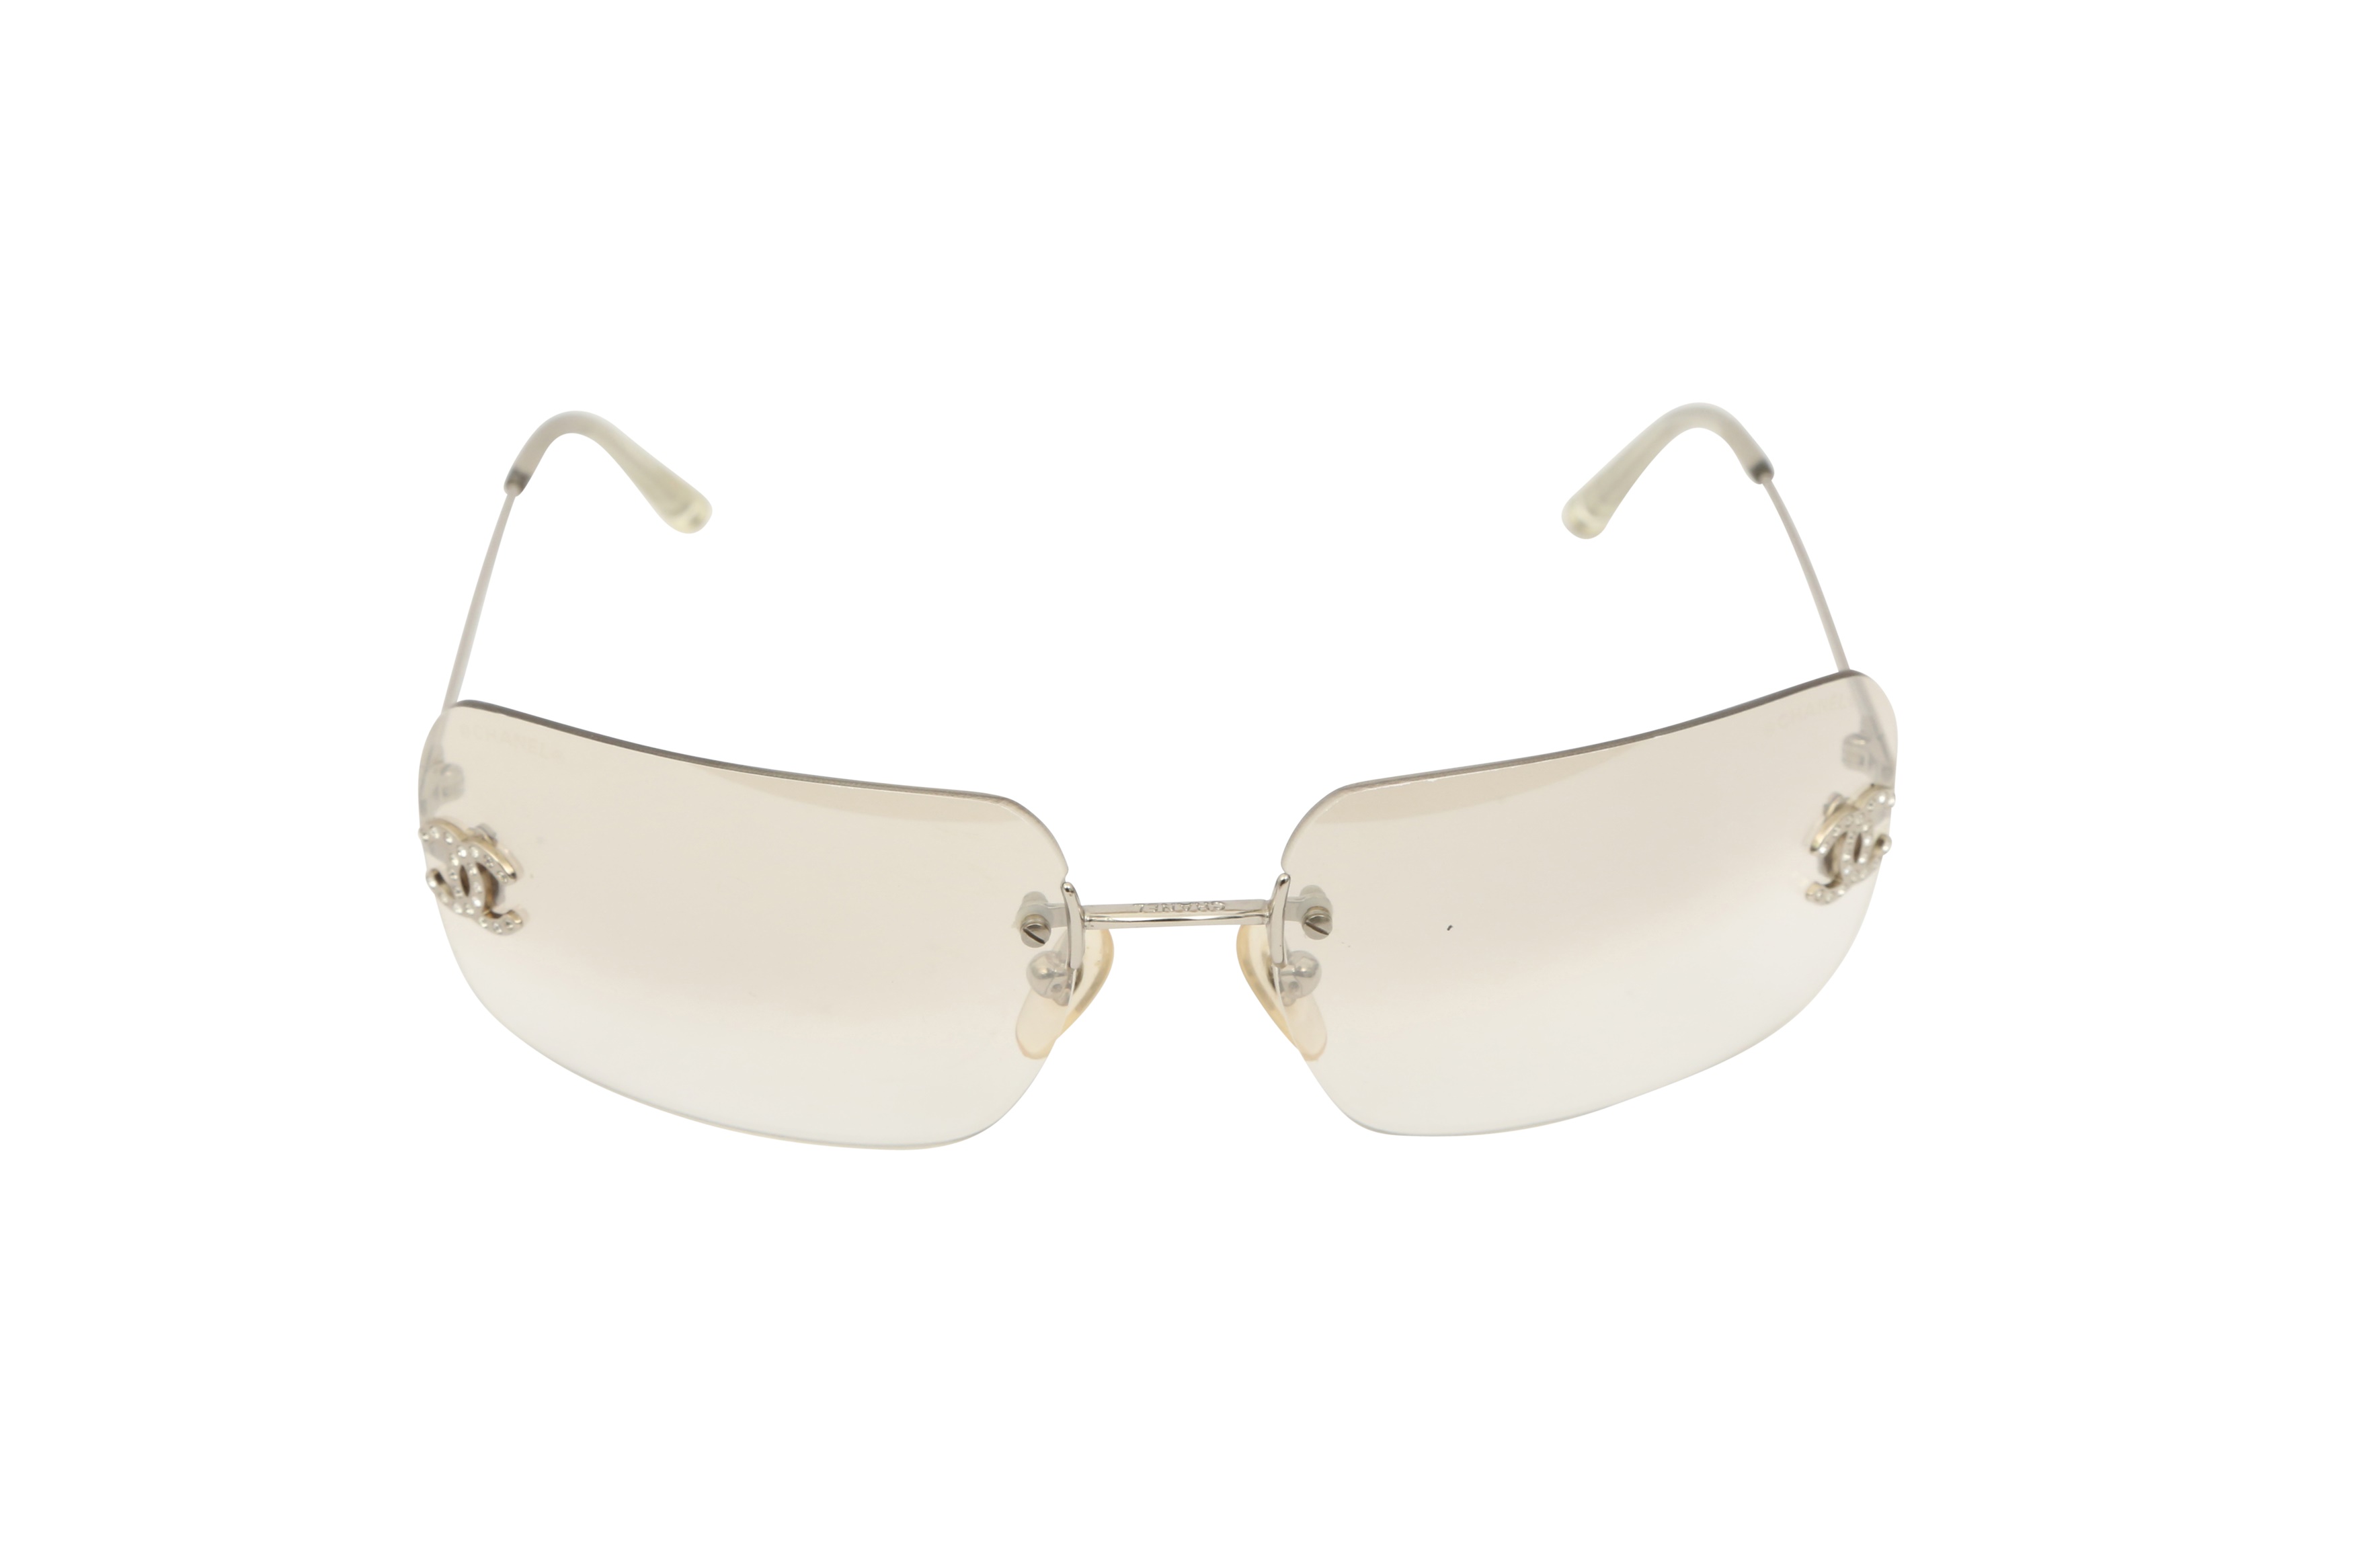 Lot 460 - Chanel Silver Rimless CC Logo Sunglasses